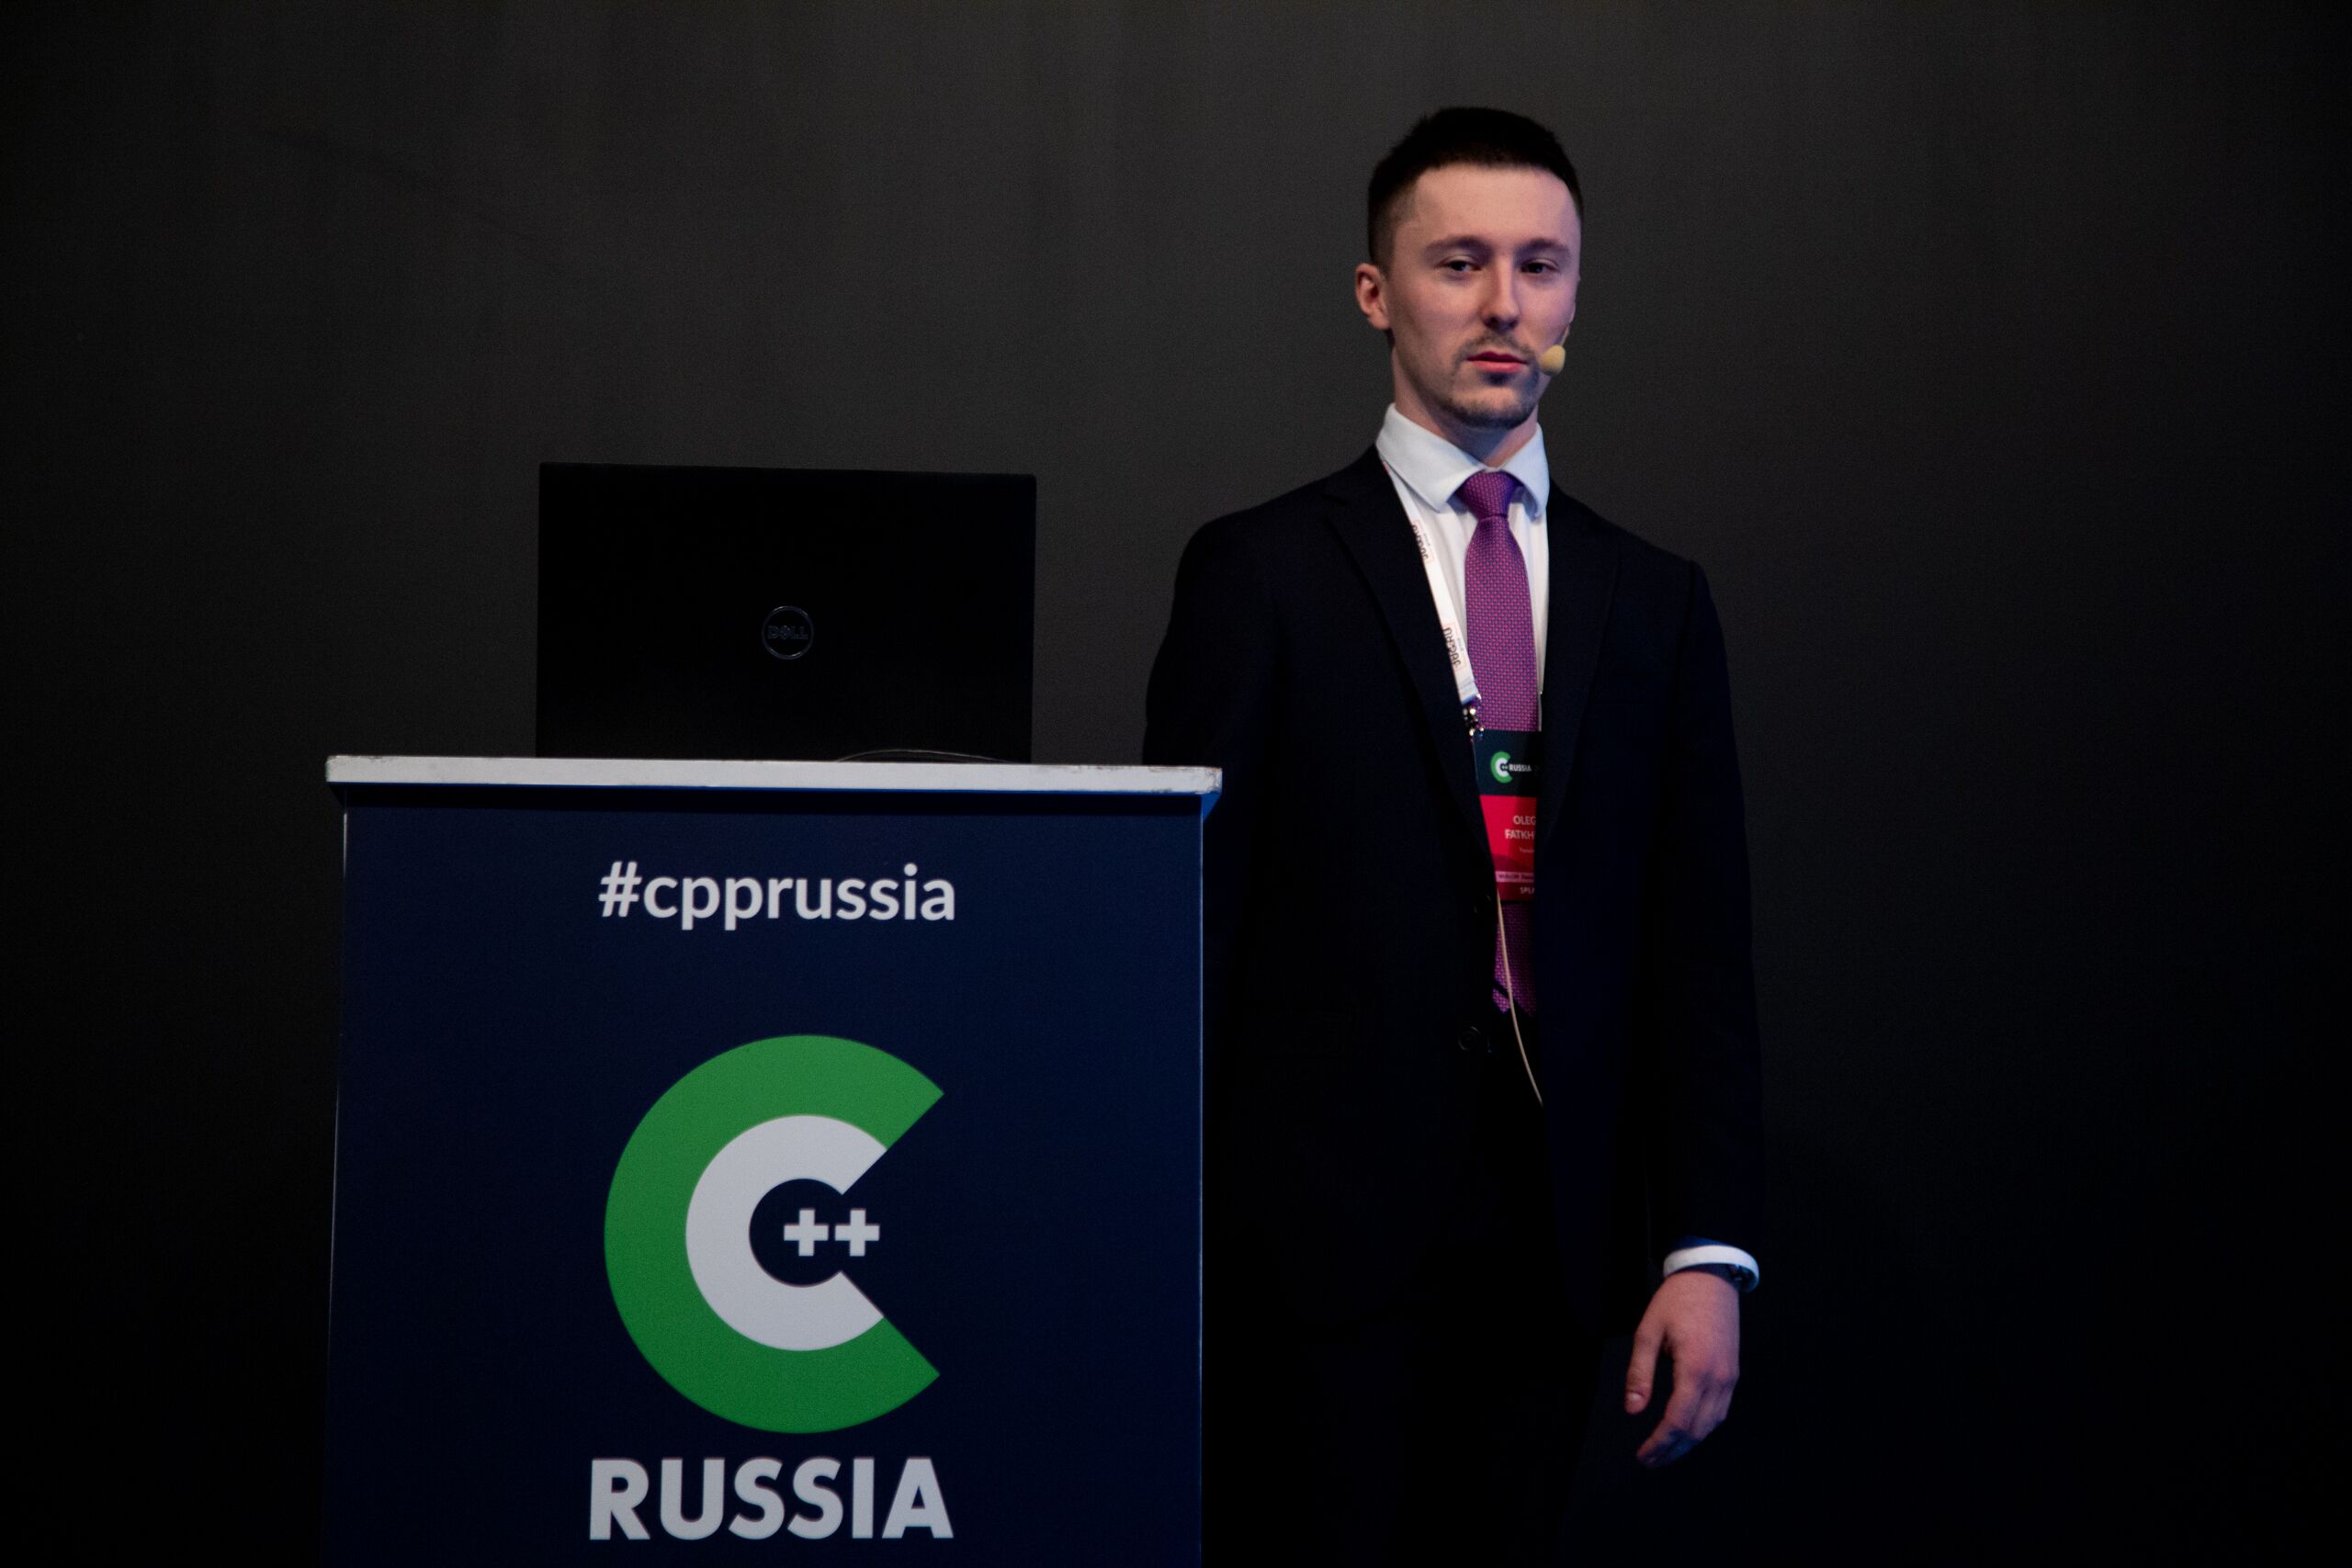 C++ Russia 2019. Небольшой отчет с места событий и анонс следующей конференции в Санкт-Петербурге - 7